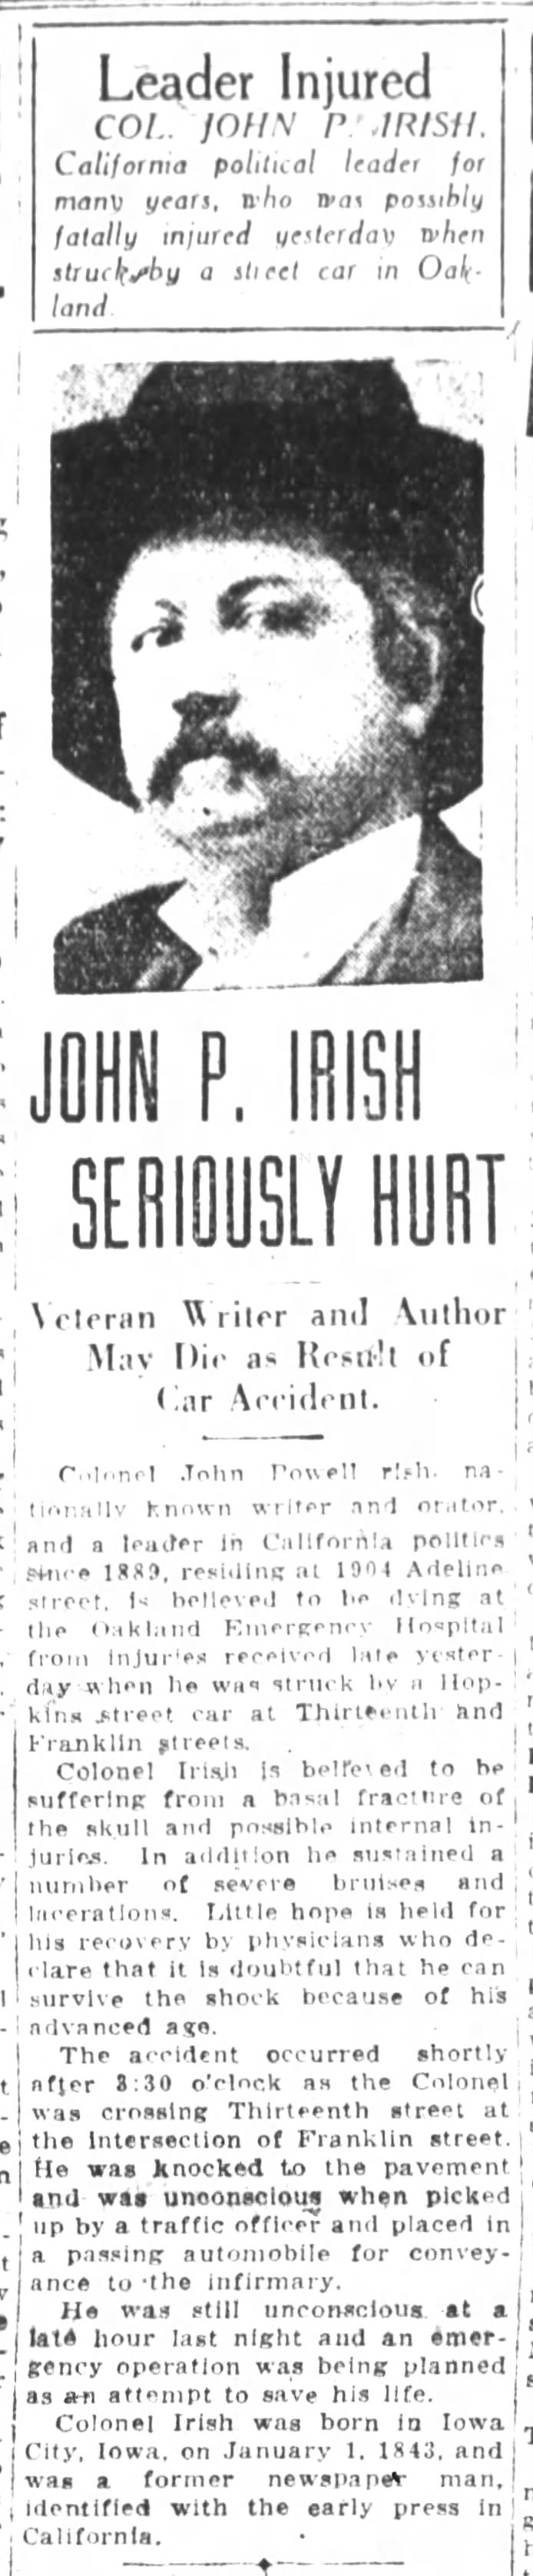 John P. Irish seriously injured